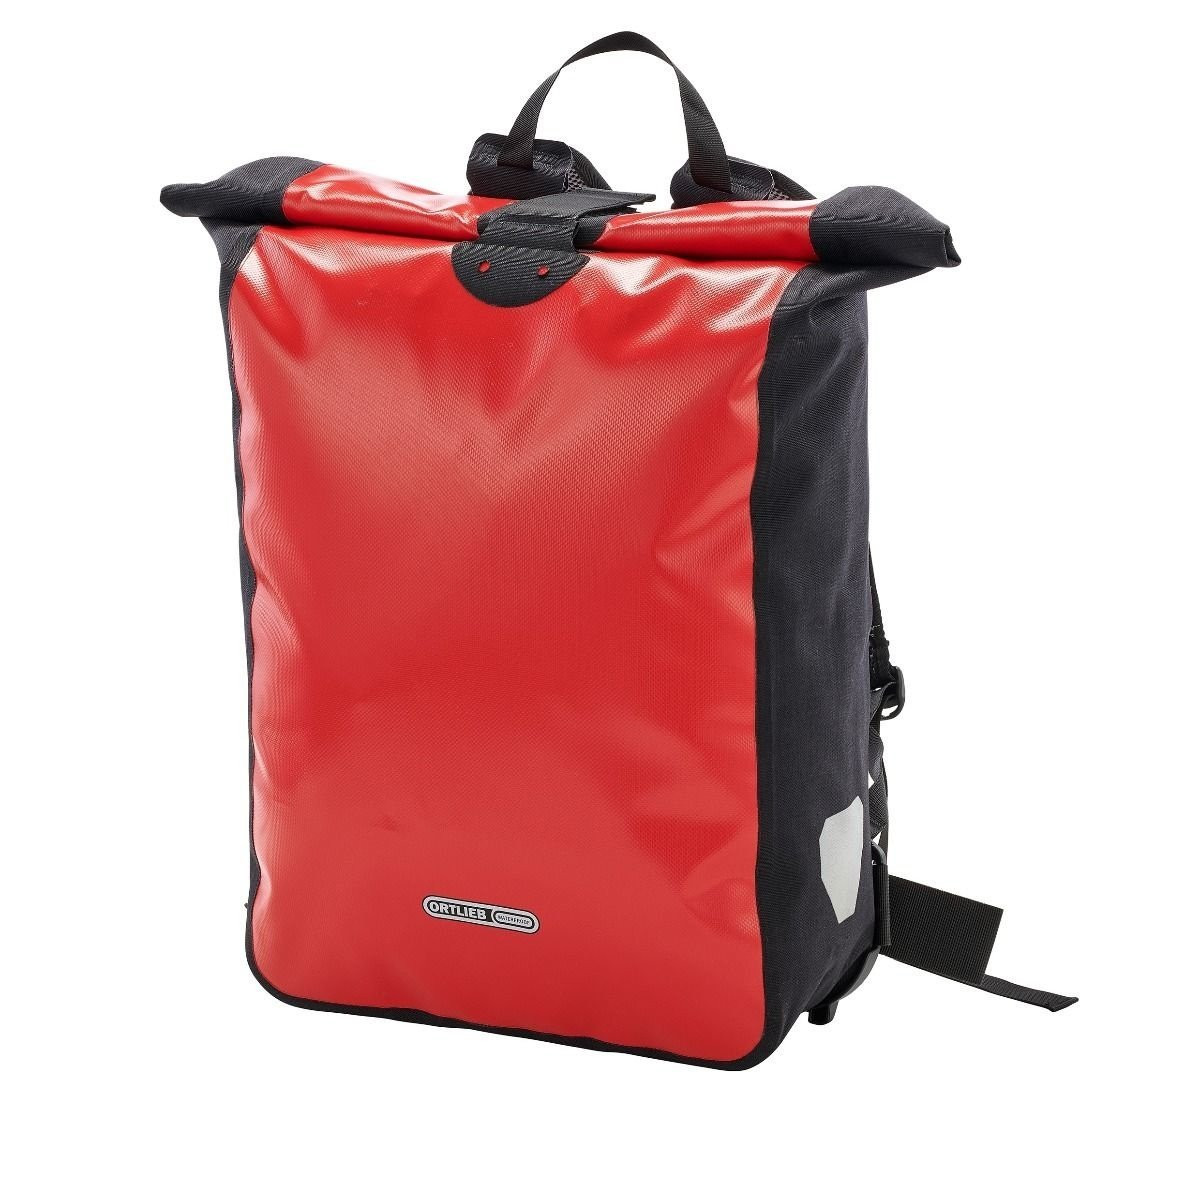 Koerierstas Messenger-Bag Red-Black 39L